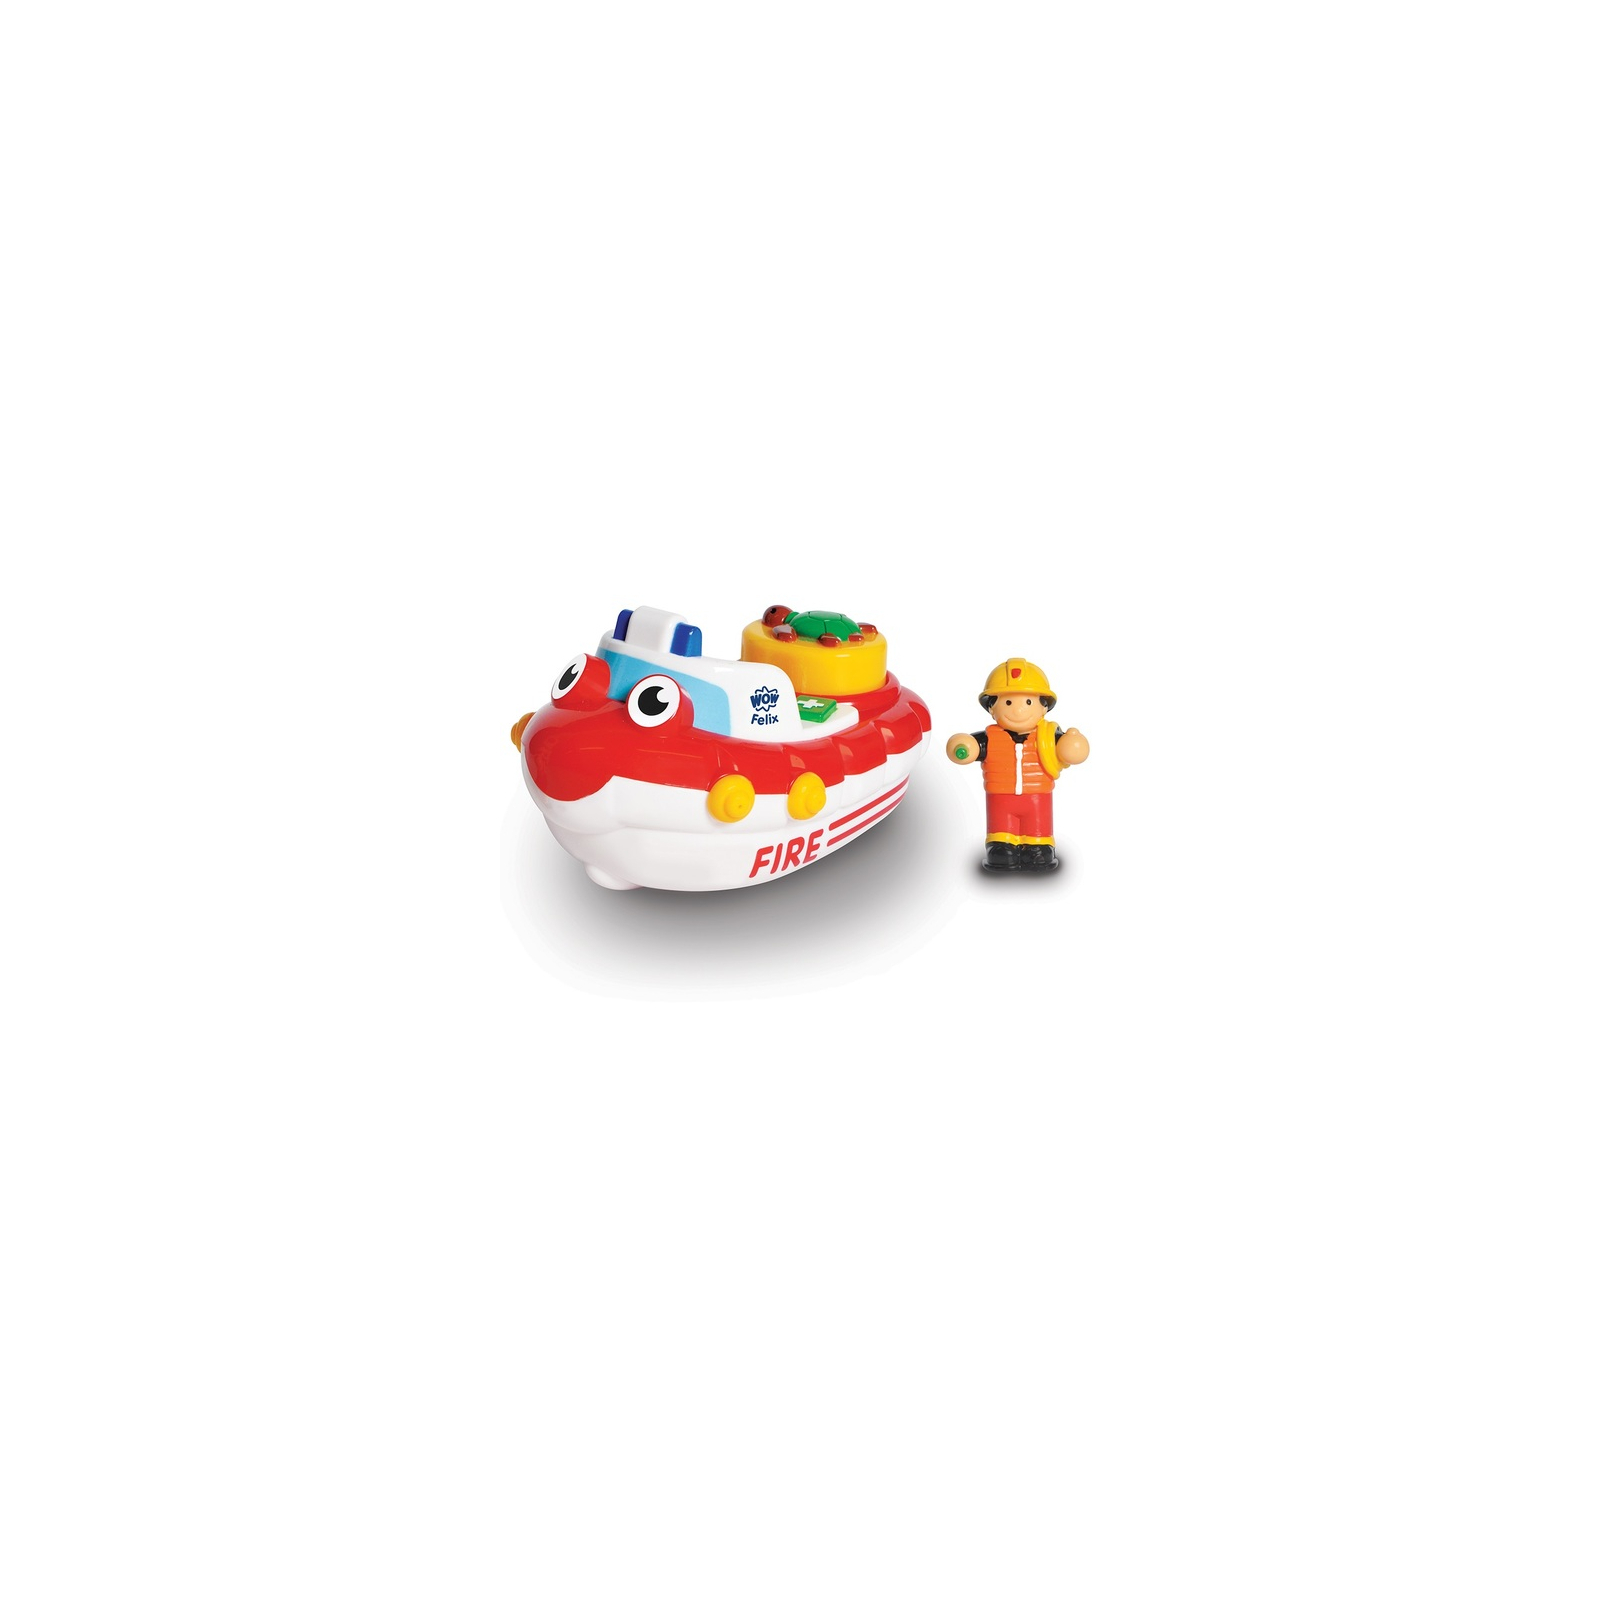 Развивающая игрушка Wow Toys Пожарная лодка Феликс (01017)